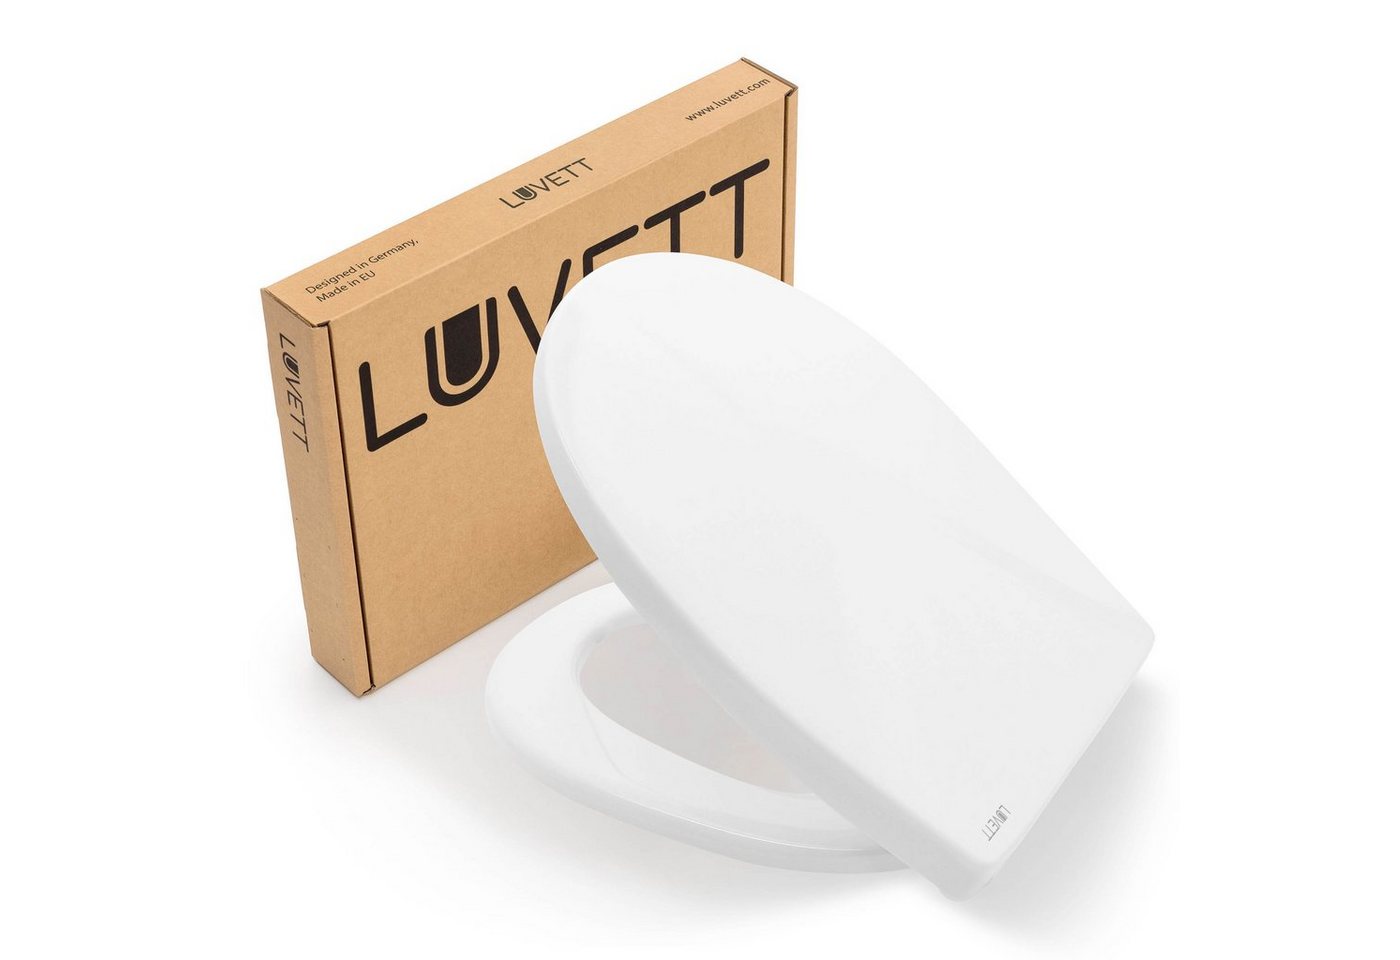 LUVETT WC-Sitz Farben C100 (Komplett-Set, Inklusive 3 Befestigungsarten), mit Original SoftClose® Absenkautomatik, Duroplast von LUVETT